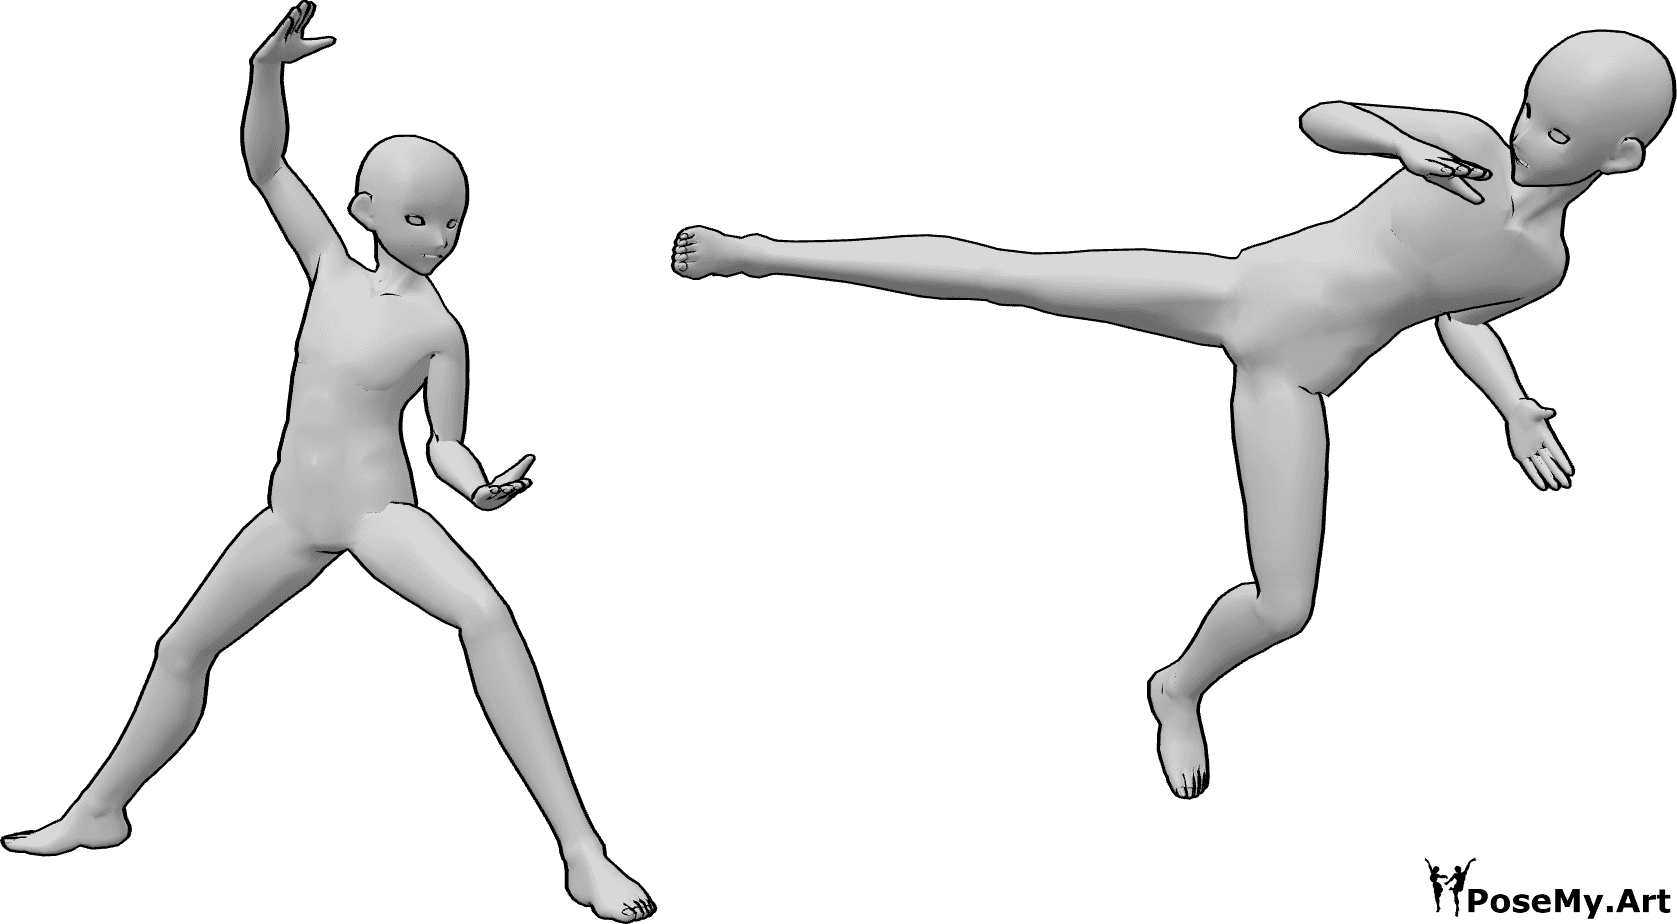 Referência de poses- Pose de luta ninja de anime - Dois homens de anime estão a lutar, um deles está a fazer uma pose de luta ninja de anime.